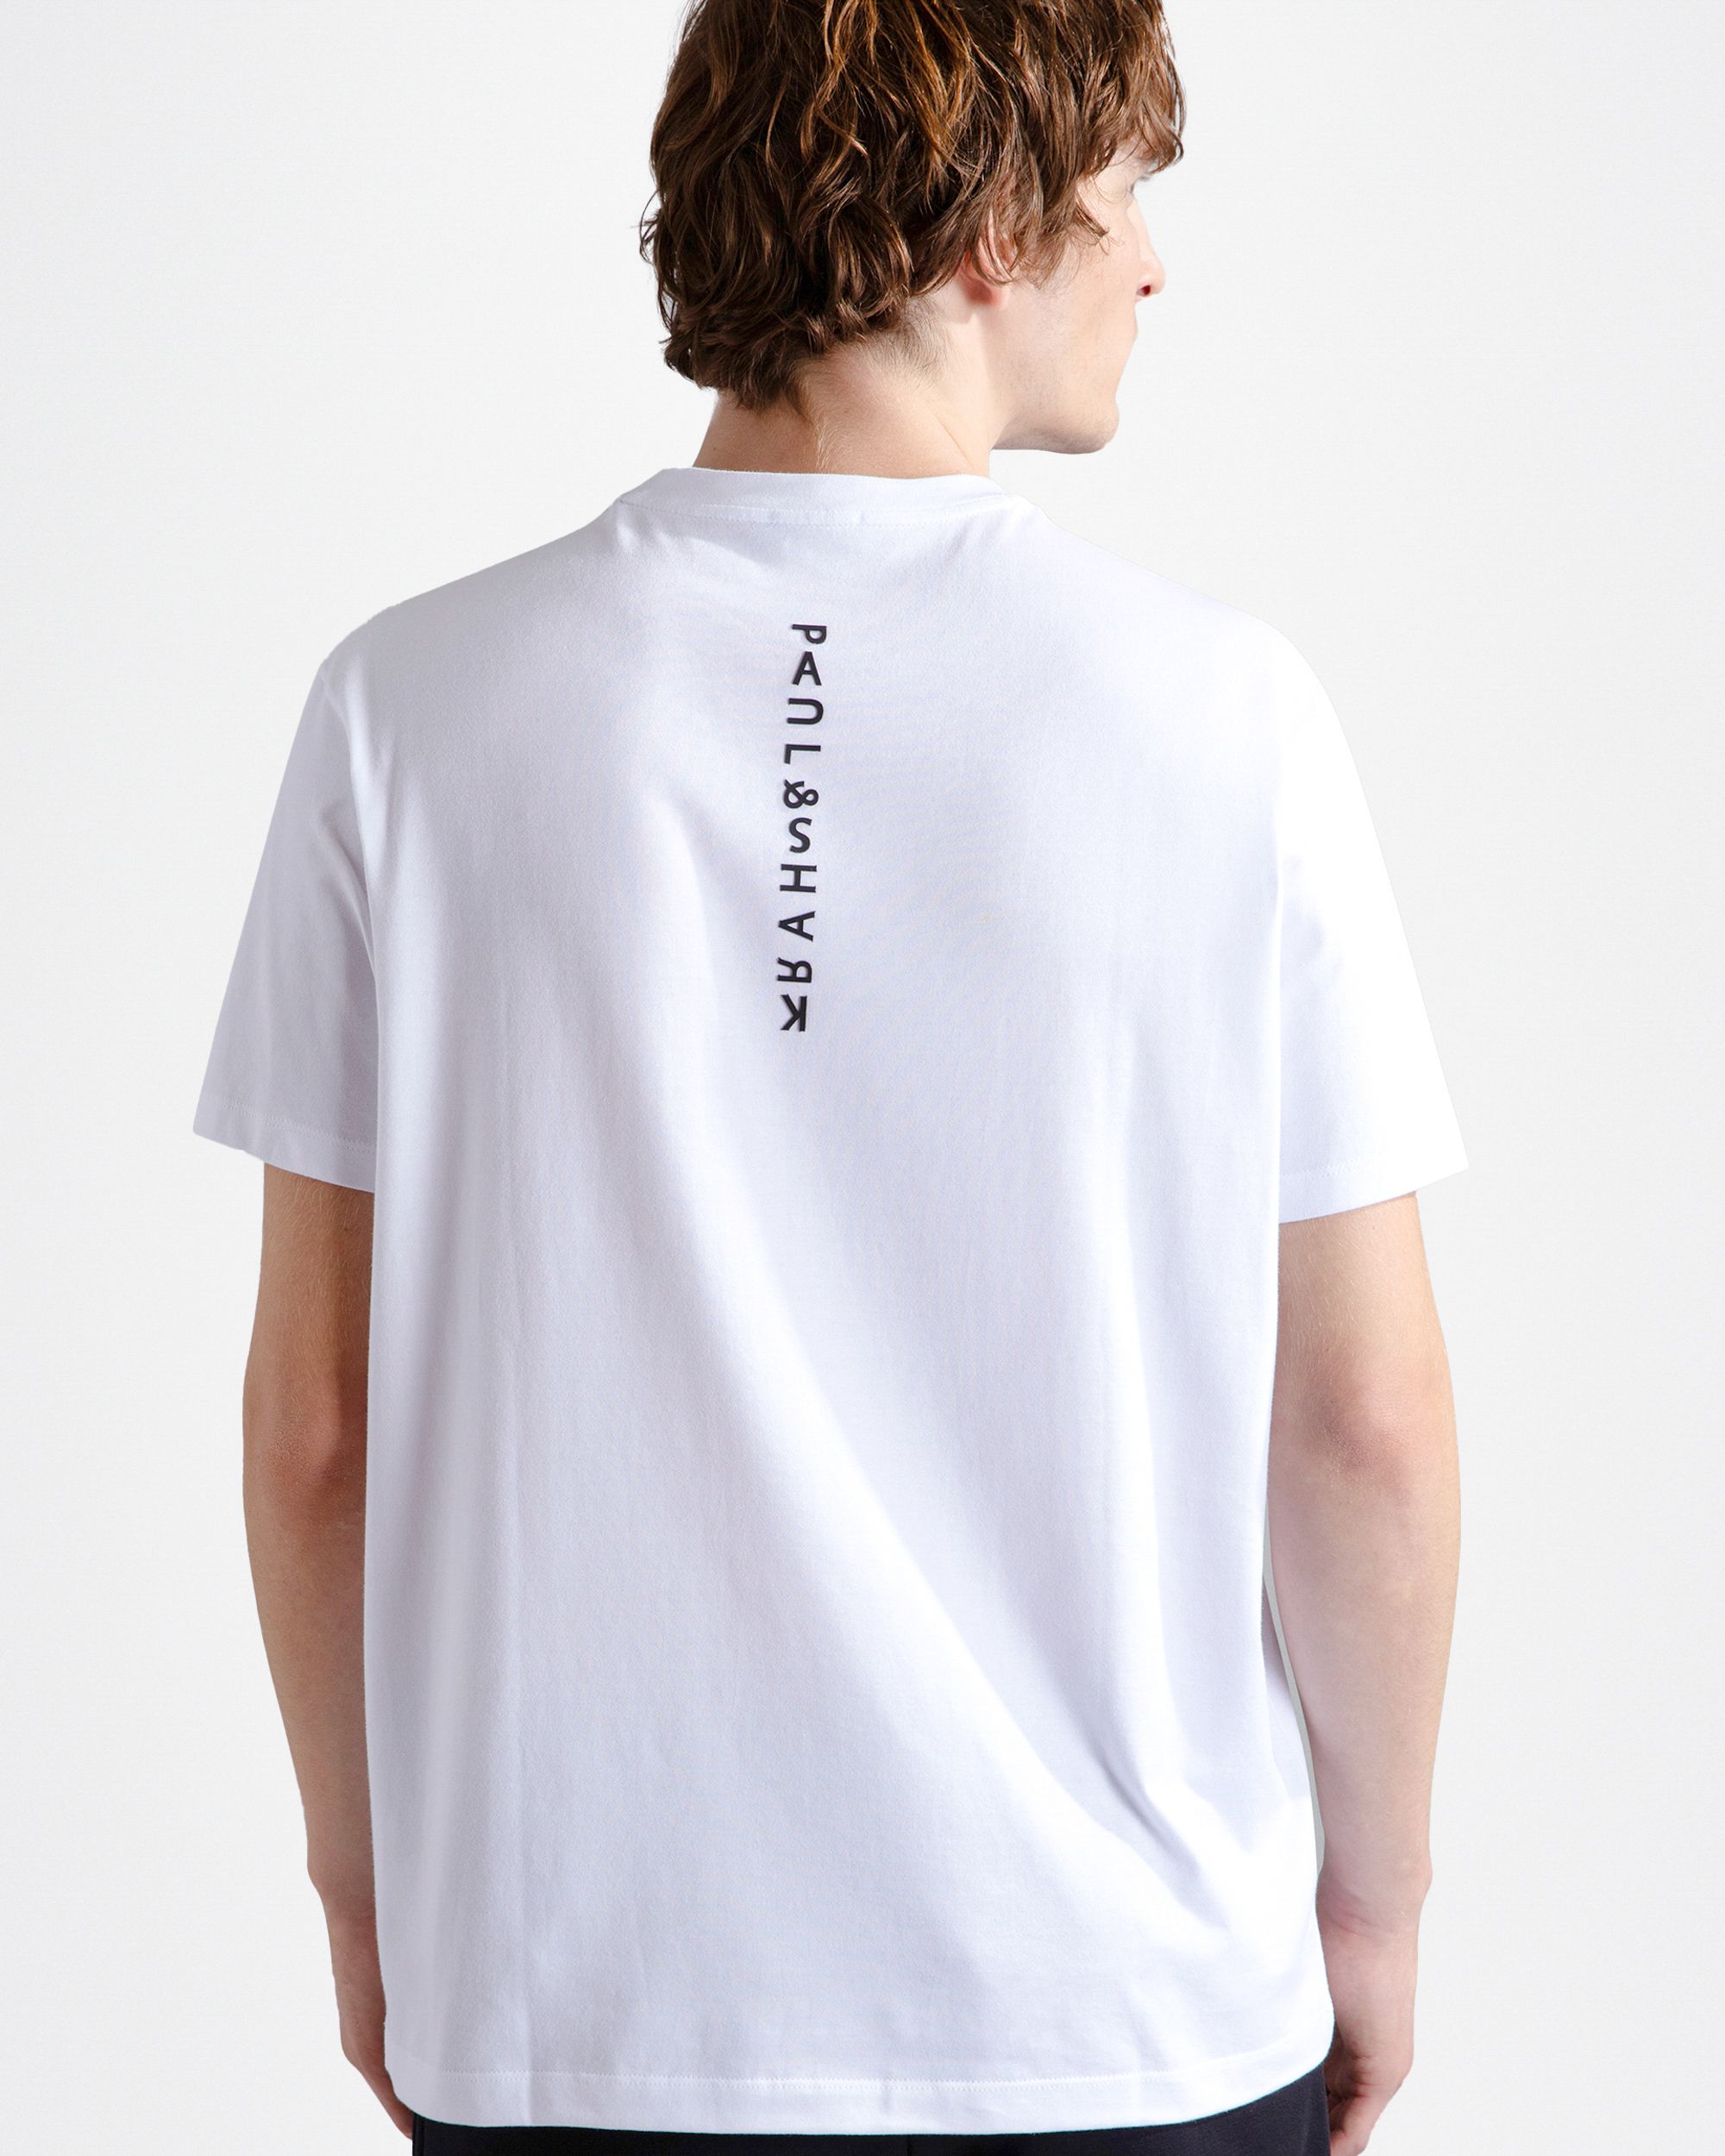 Paul & Shark T-shirt KM Ecru 092033-001-XL